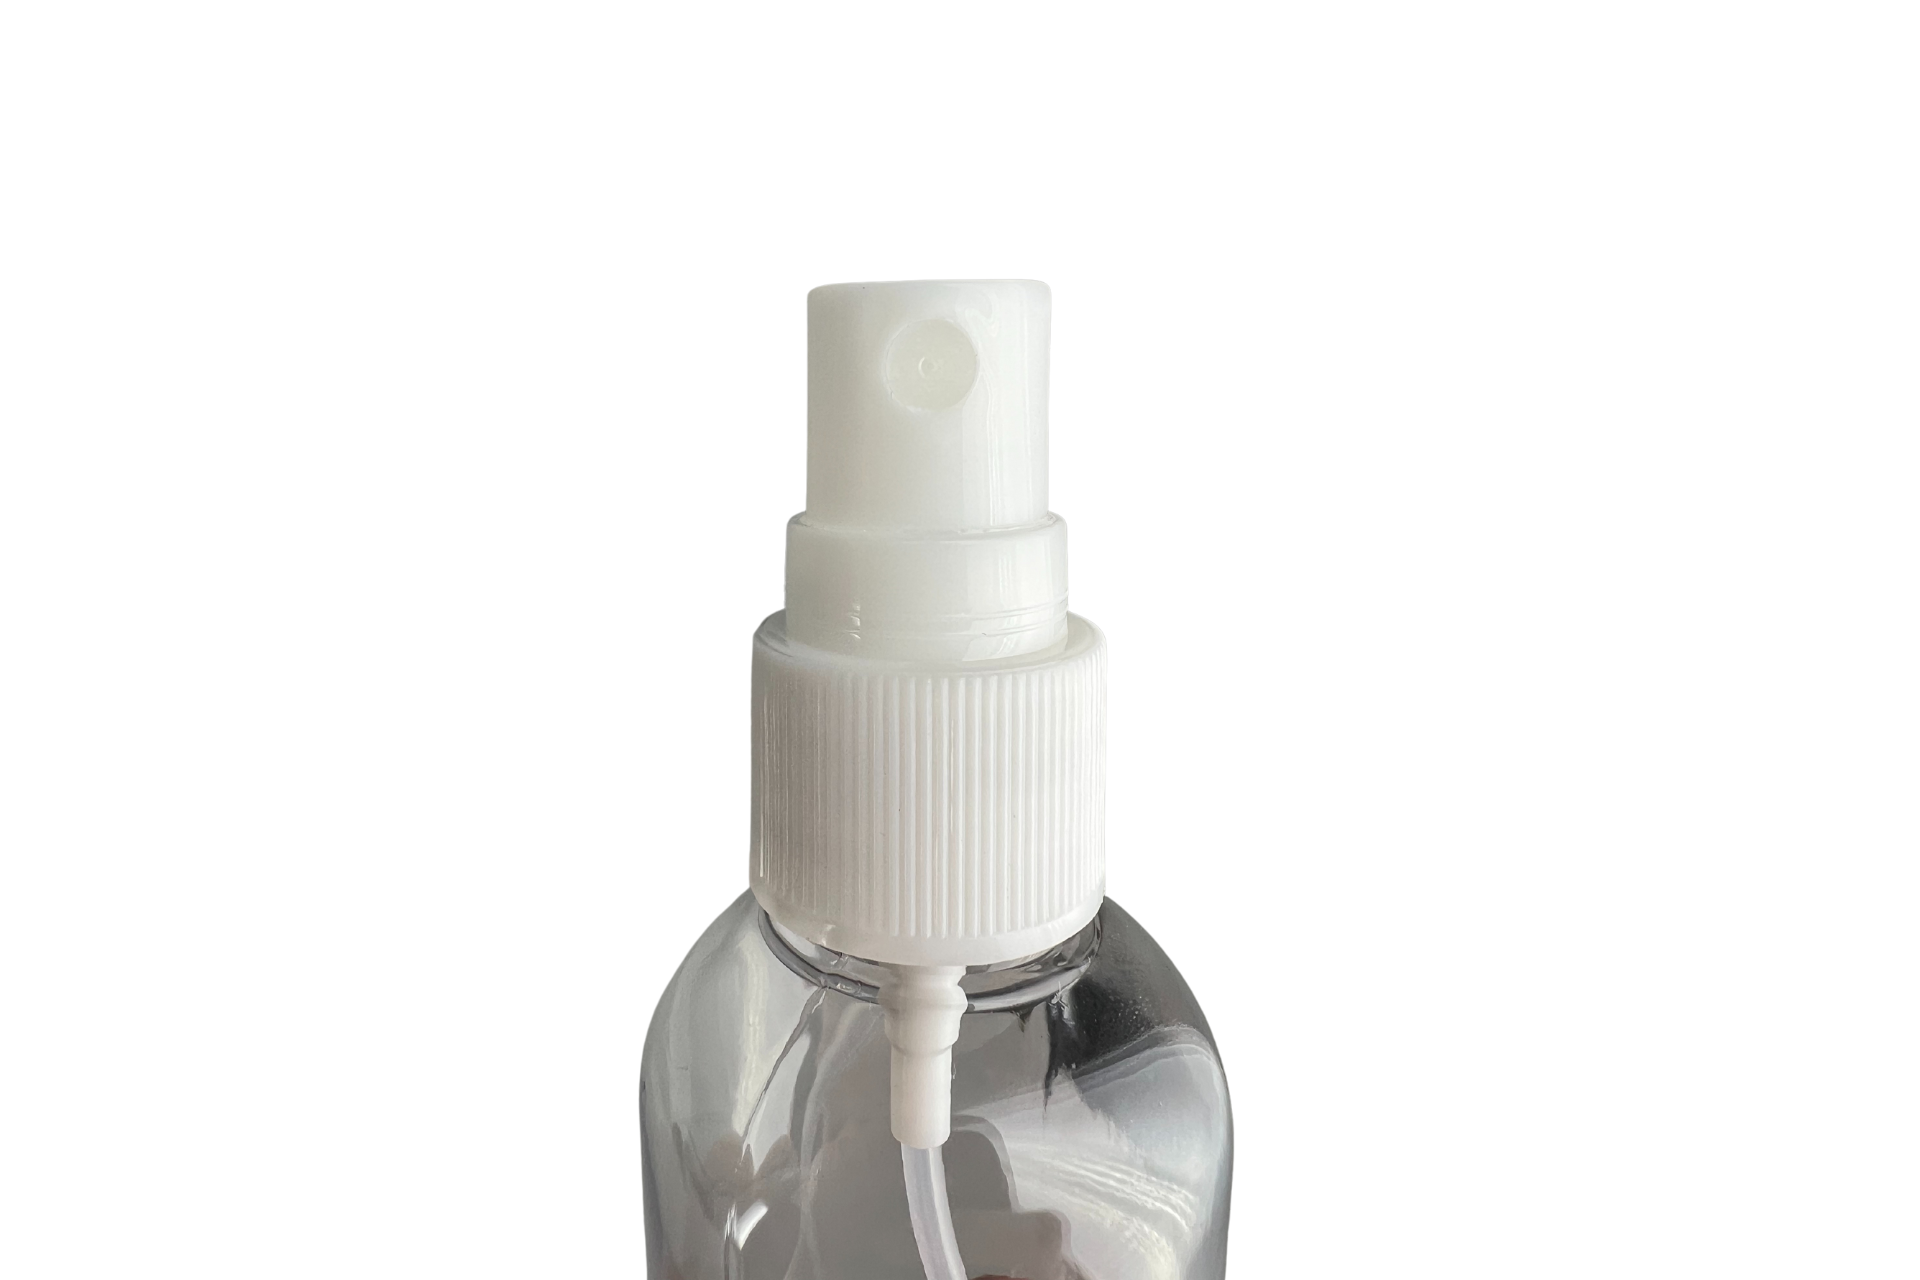 Empty bottle with spray head, neutral label, 100 ml bottle